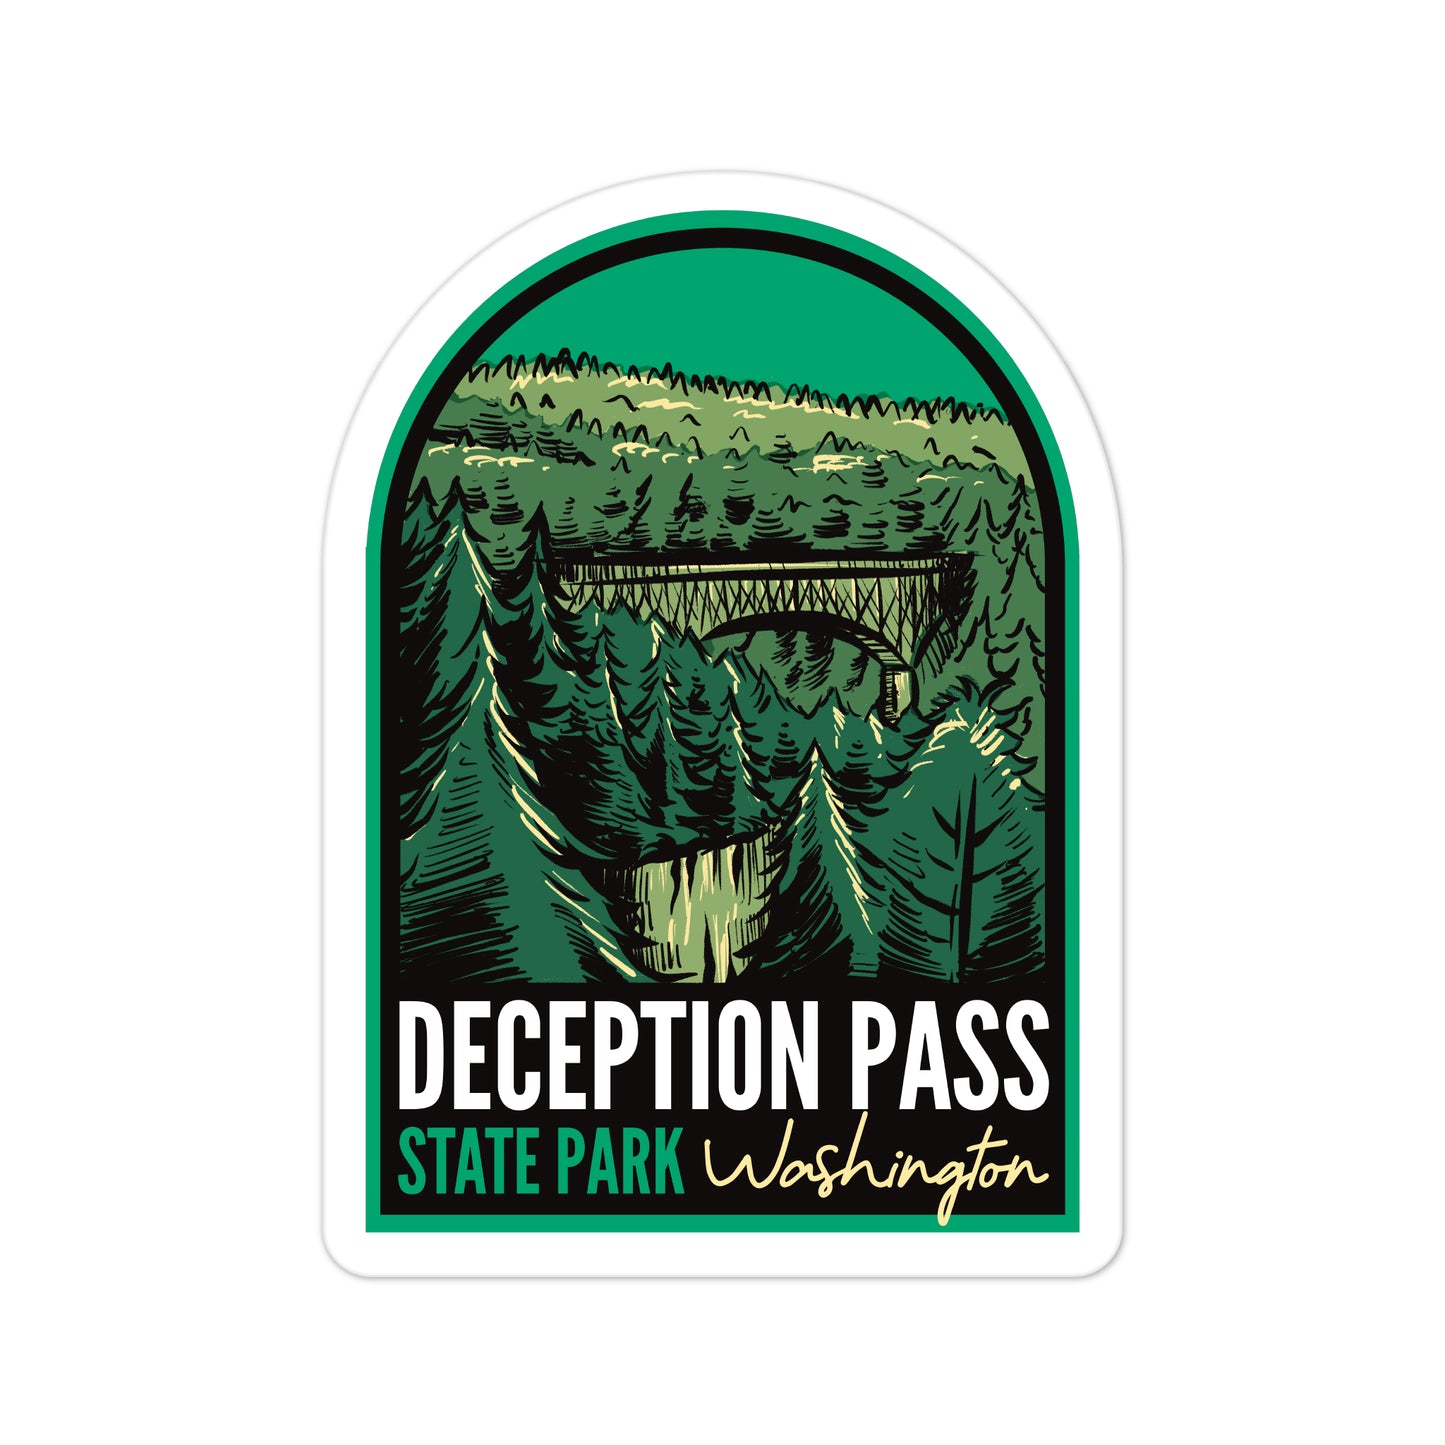 A sticker of Deception Pass State Park